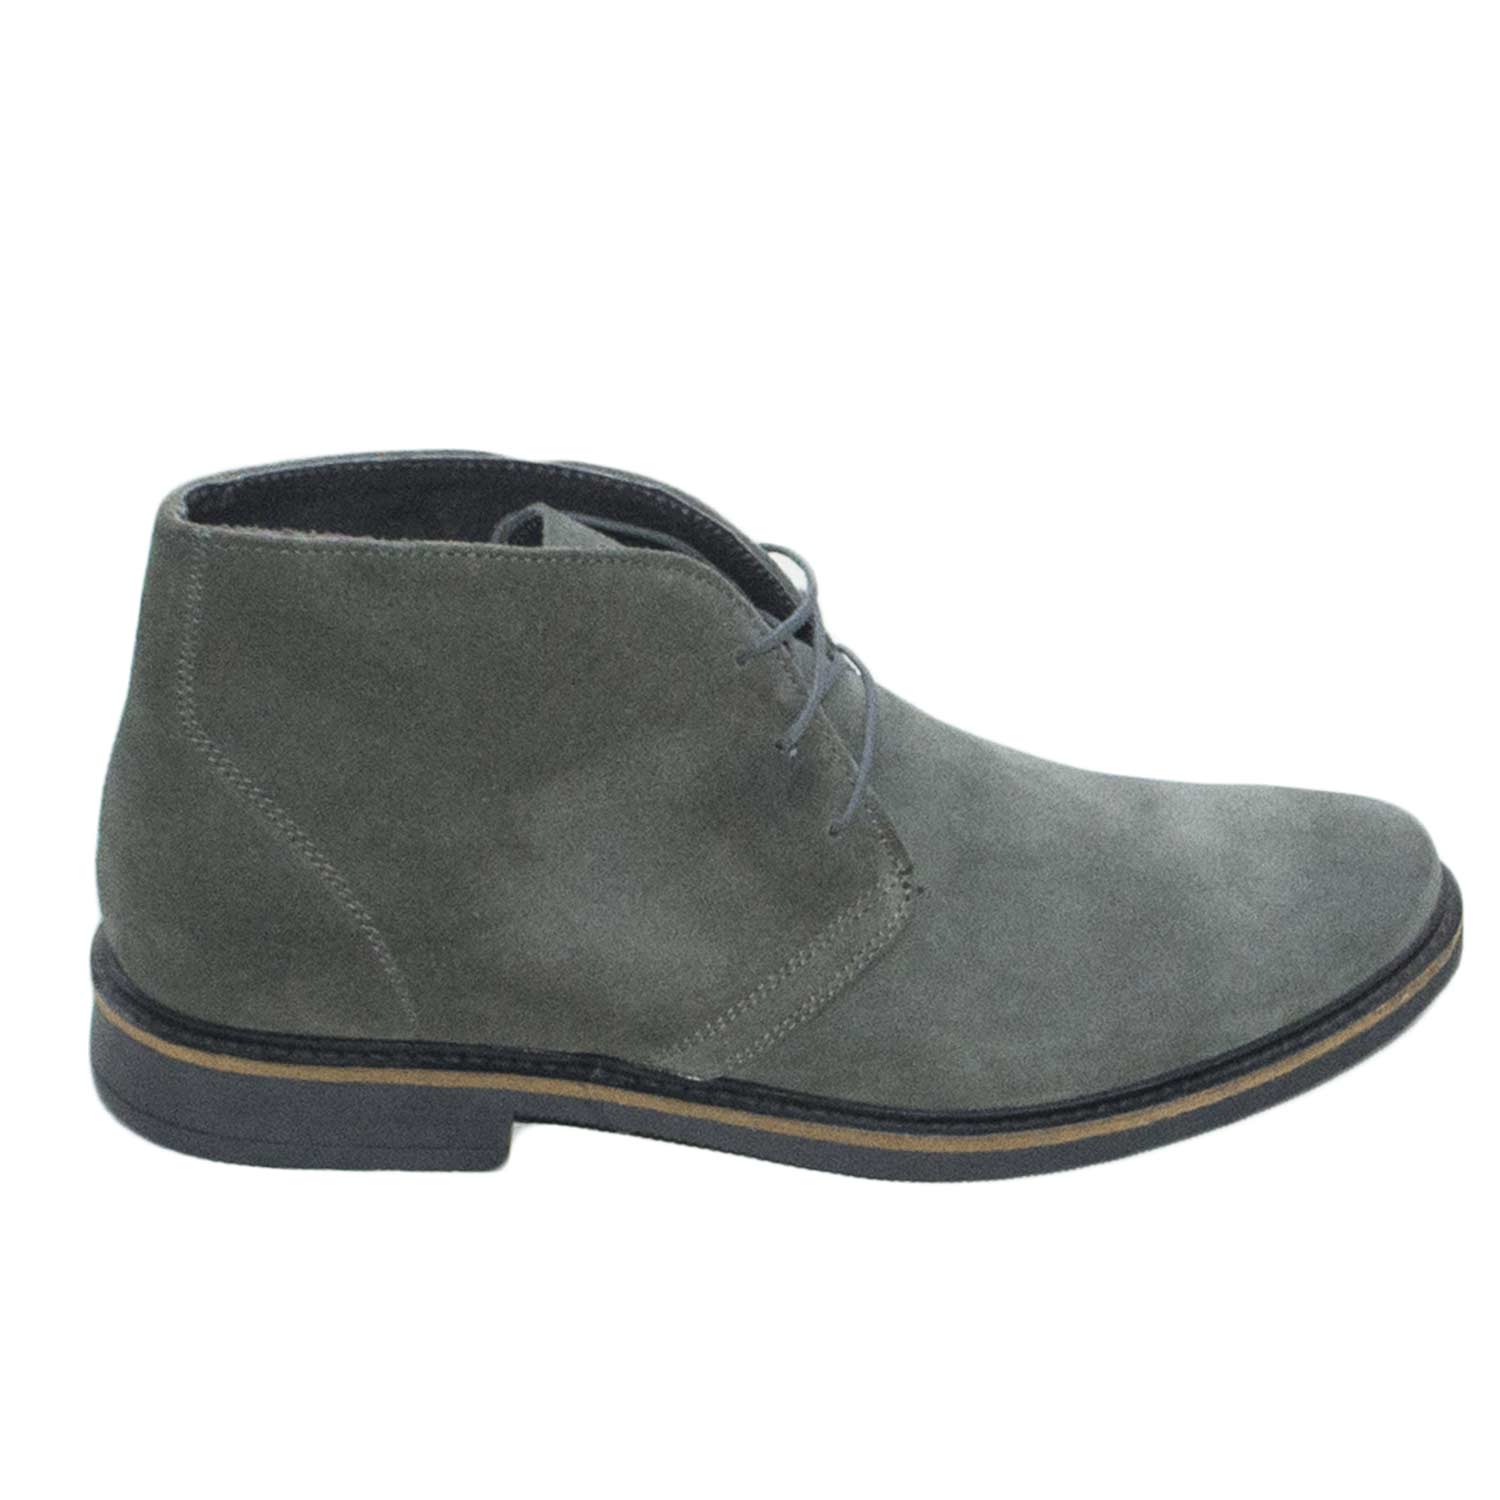 Polacchino scarpe uomo casual light camoscio grigio vera pelle made in  italy uomo polacchini made in italy | MaluShoes